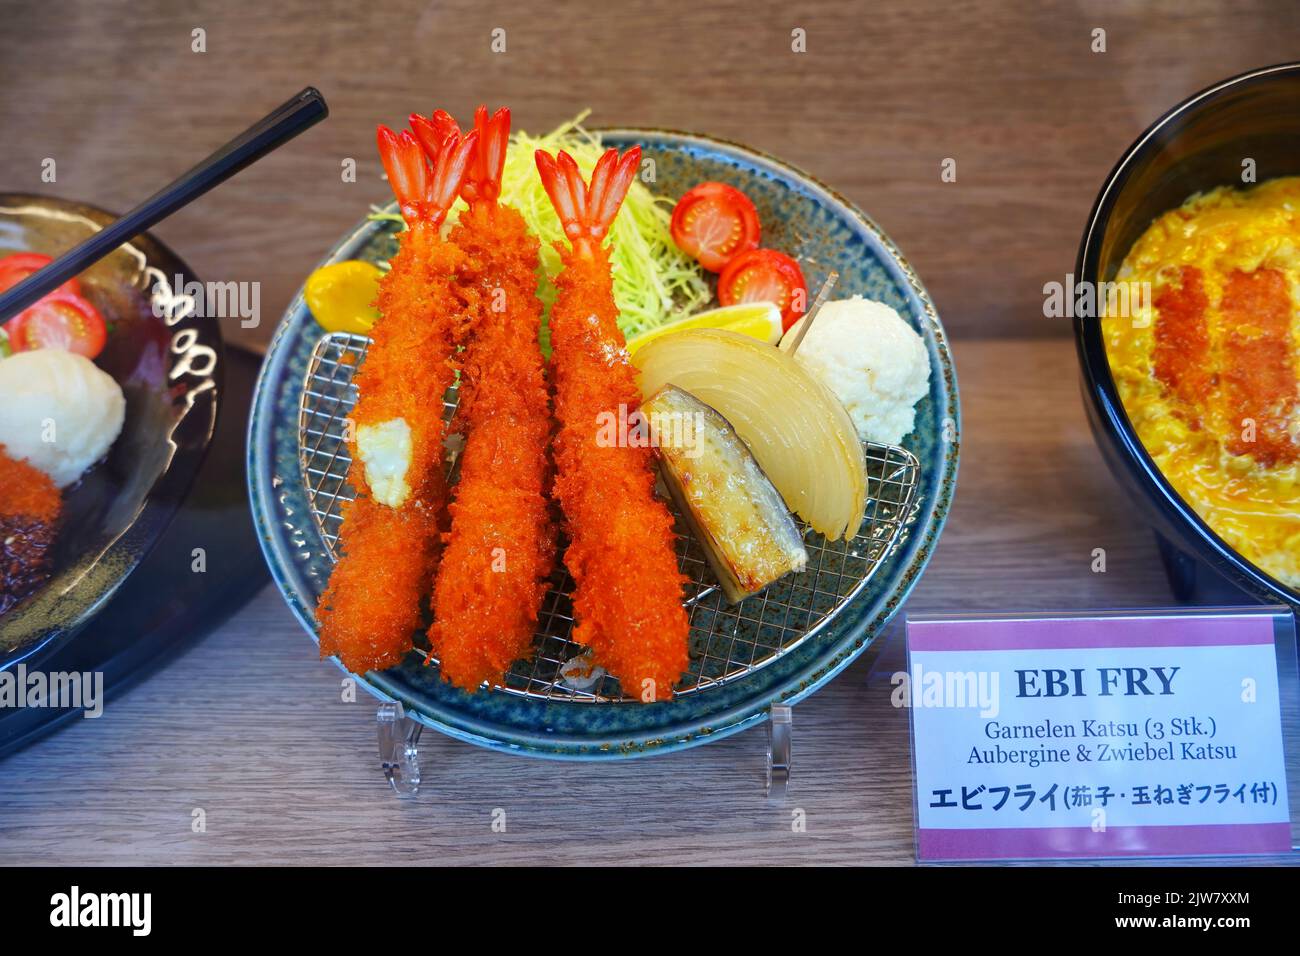 Speiseprobe eines japanischen ebi-Fry-Gerichts, das im Fenster eines Restaurants im japanischen Viertel in Düsseldorf/Deutschland angezeigt wird. Stockfoto